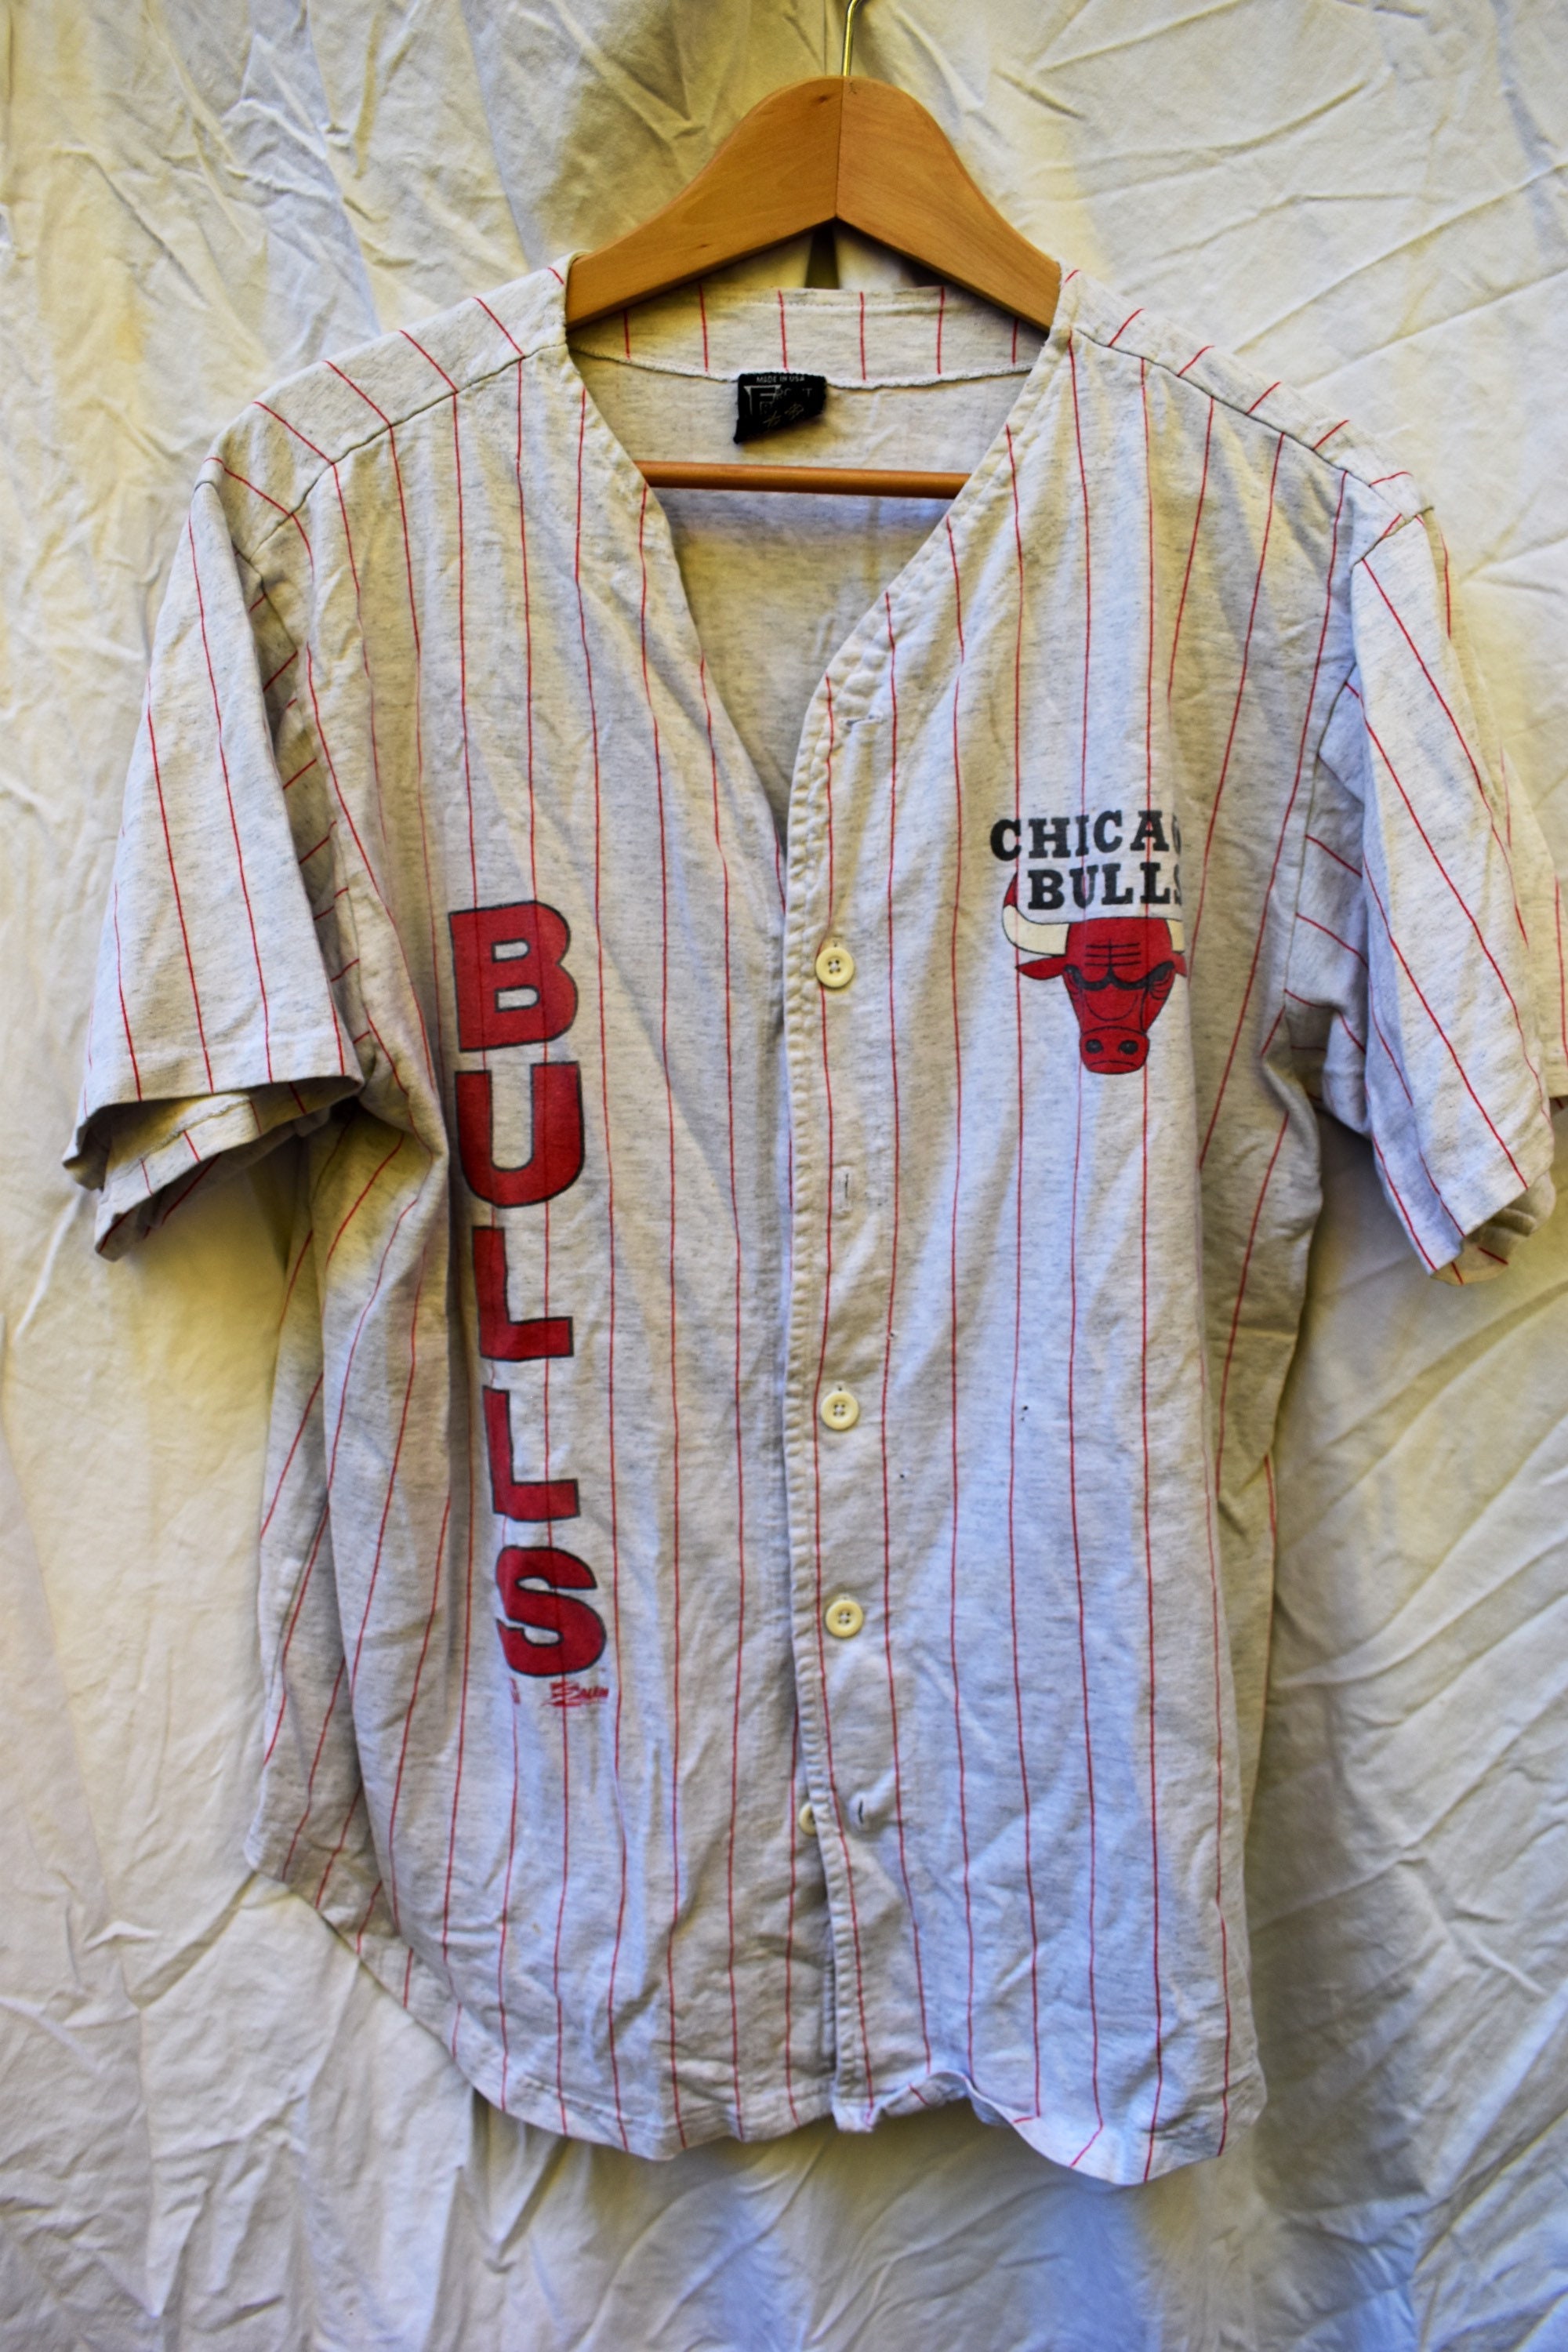 bulls button up jersey